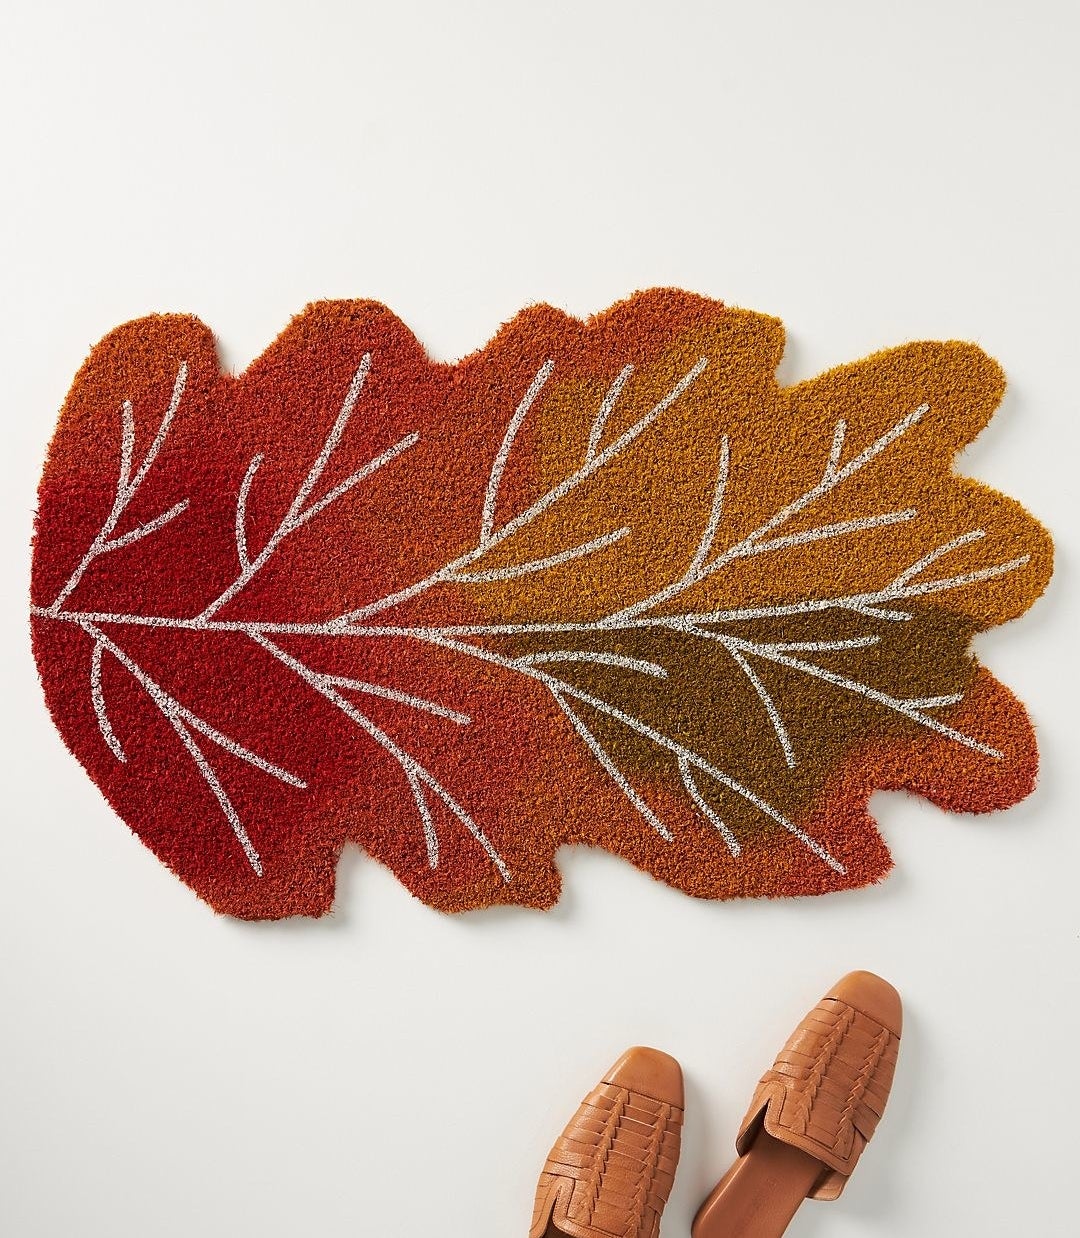 the leaf shaped mat